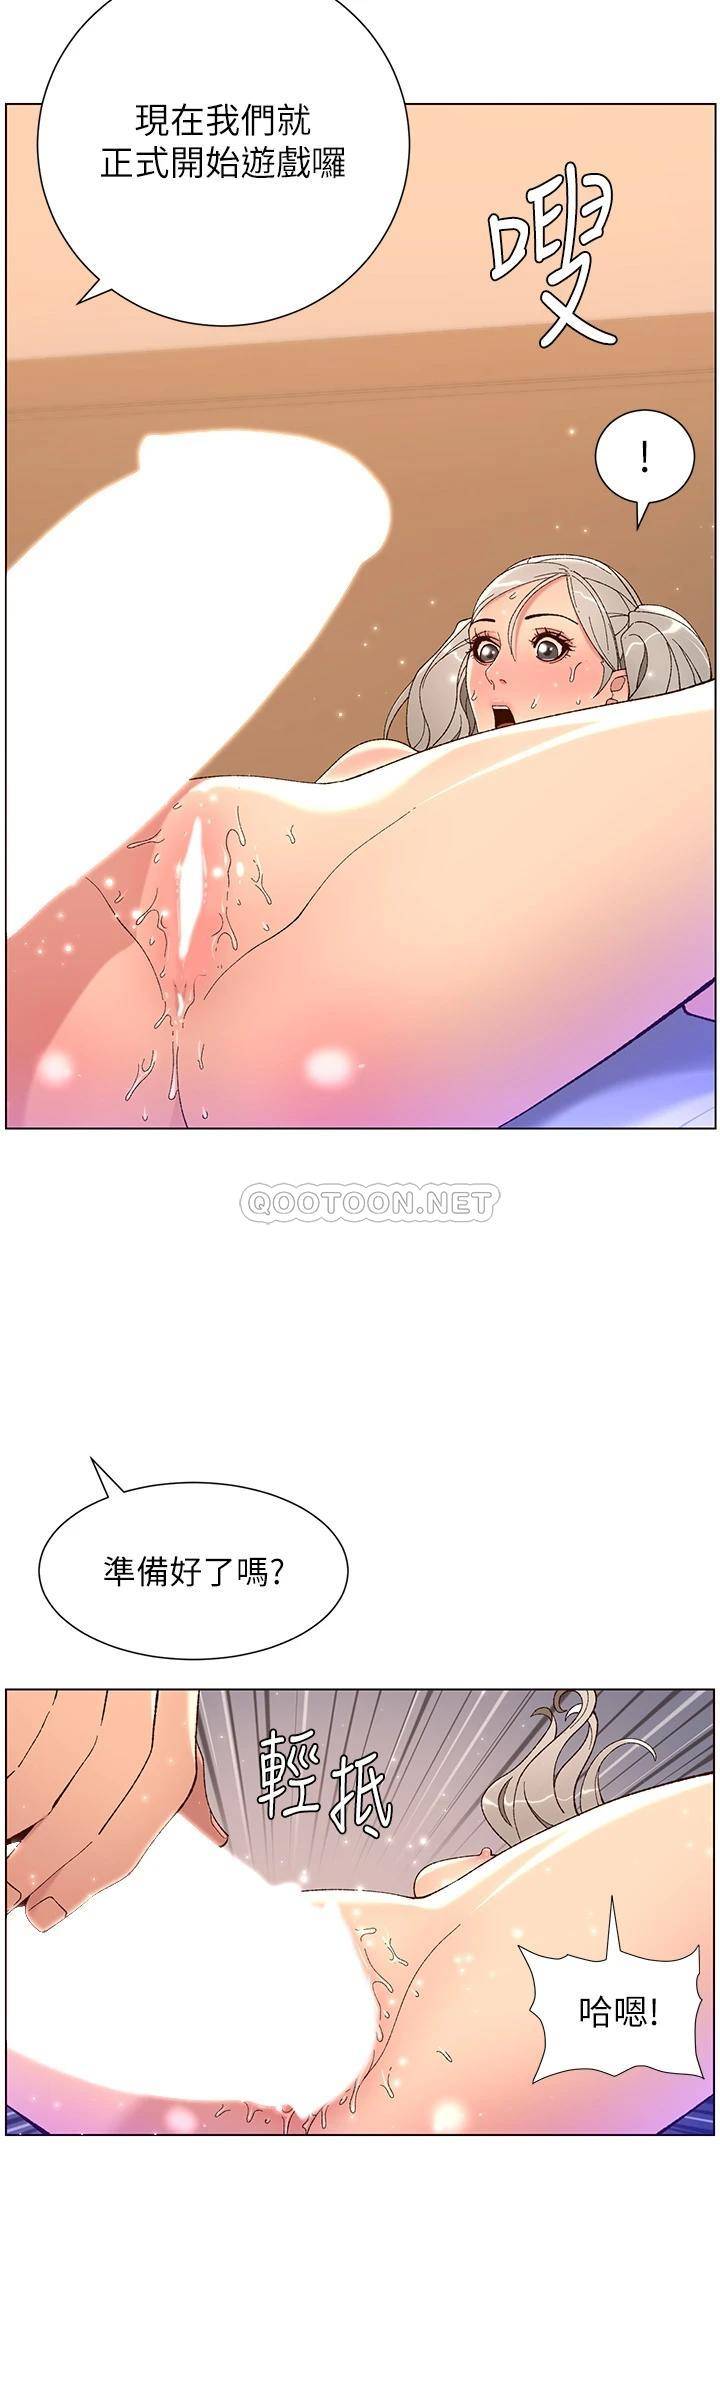 韩国污漫画 帝王App 第37话 第一次高潮的粉红鲍鱼 21